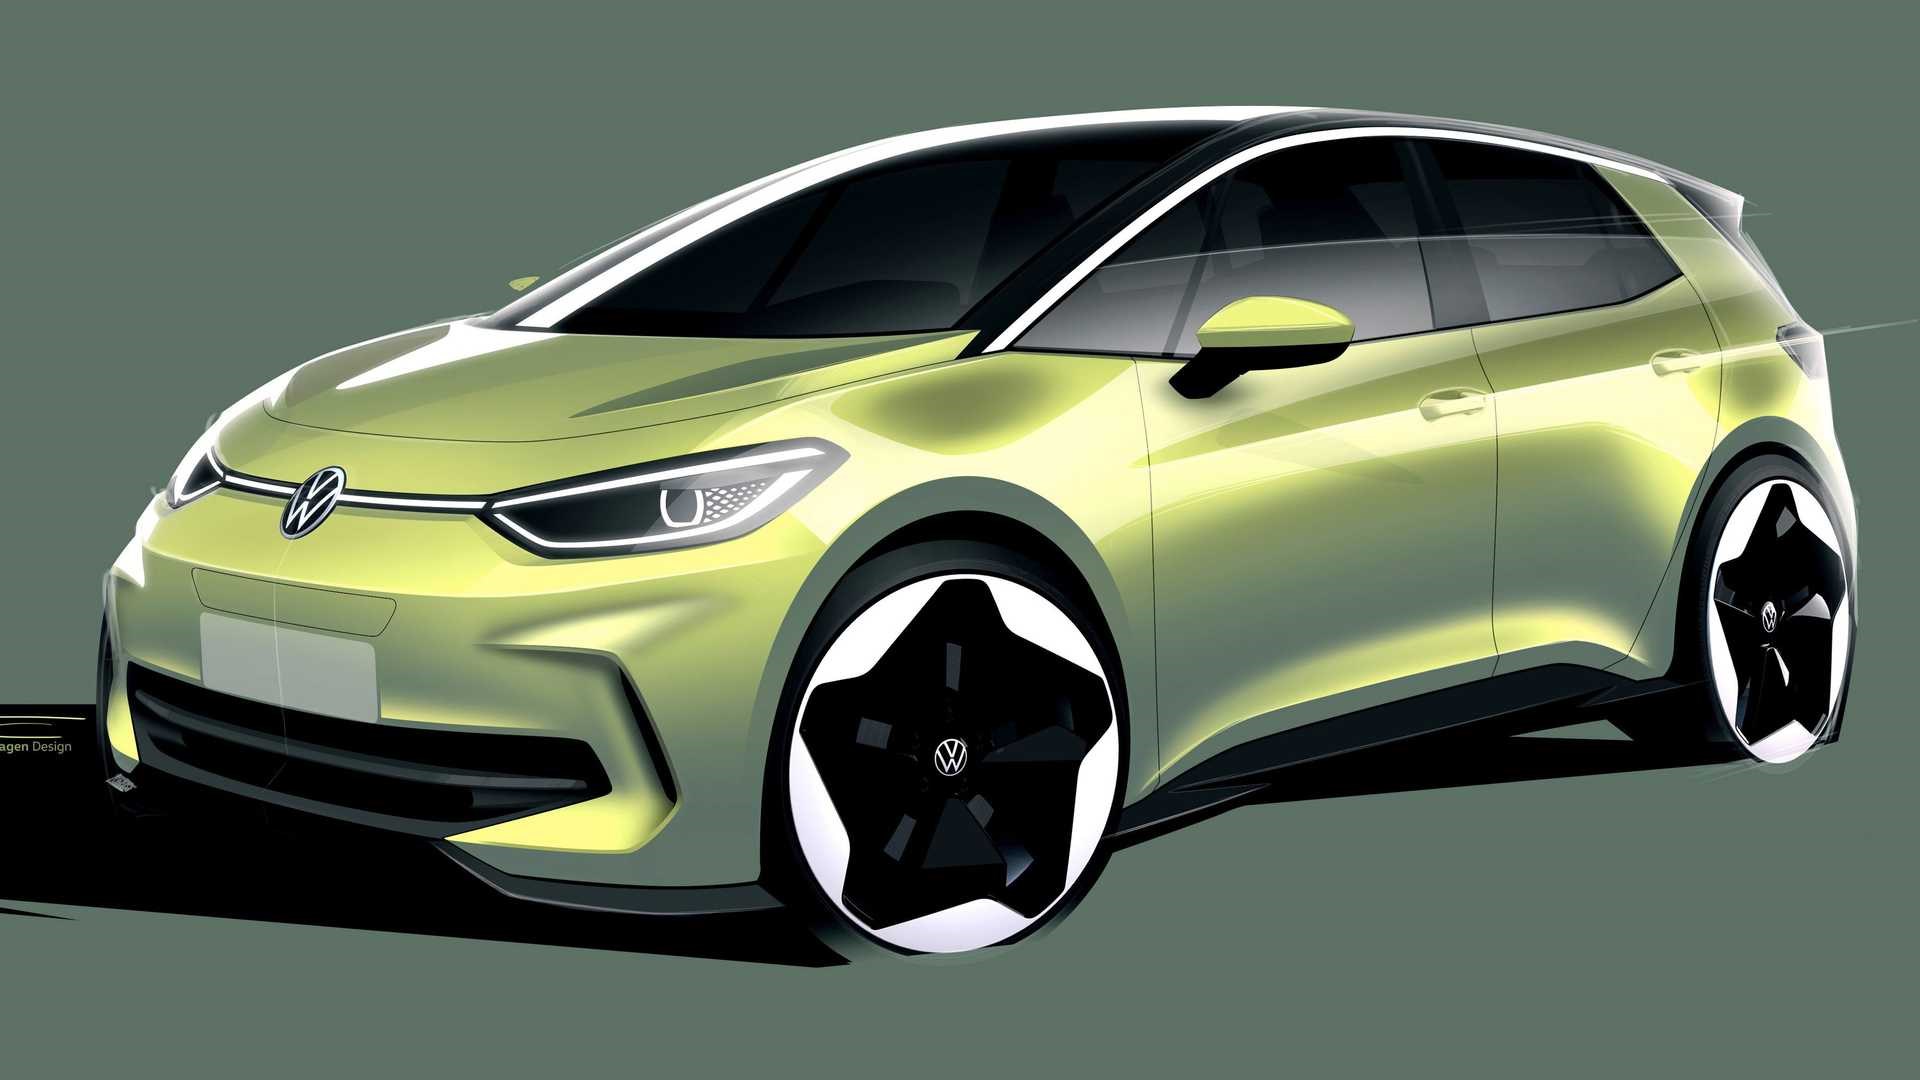 Makyajlı 2023 Volkswagen ID 3'ün çizimleri paylaşıldı